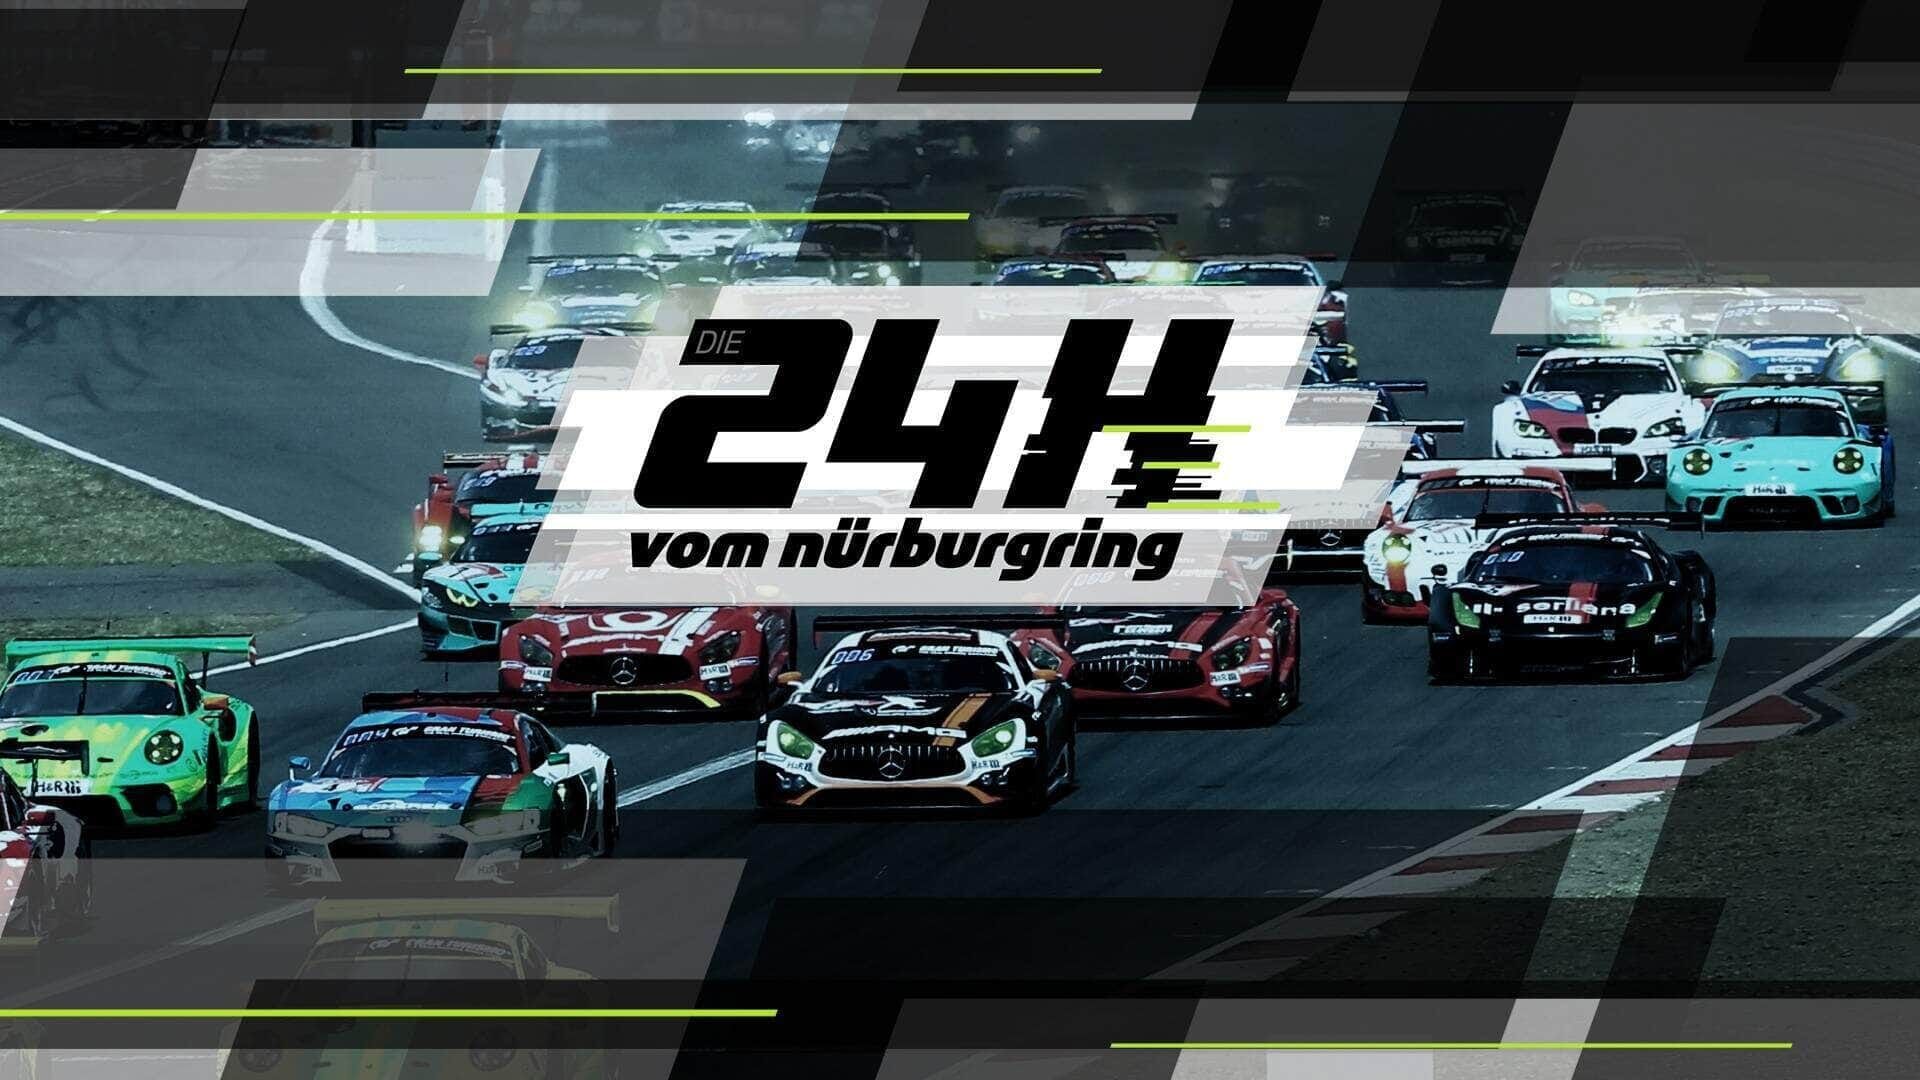 Die 24 Stunden vom Nürburgring – Das größte Autorennen der Welt: Top Qualifying